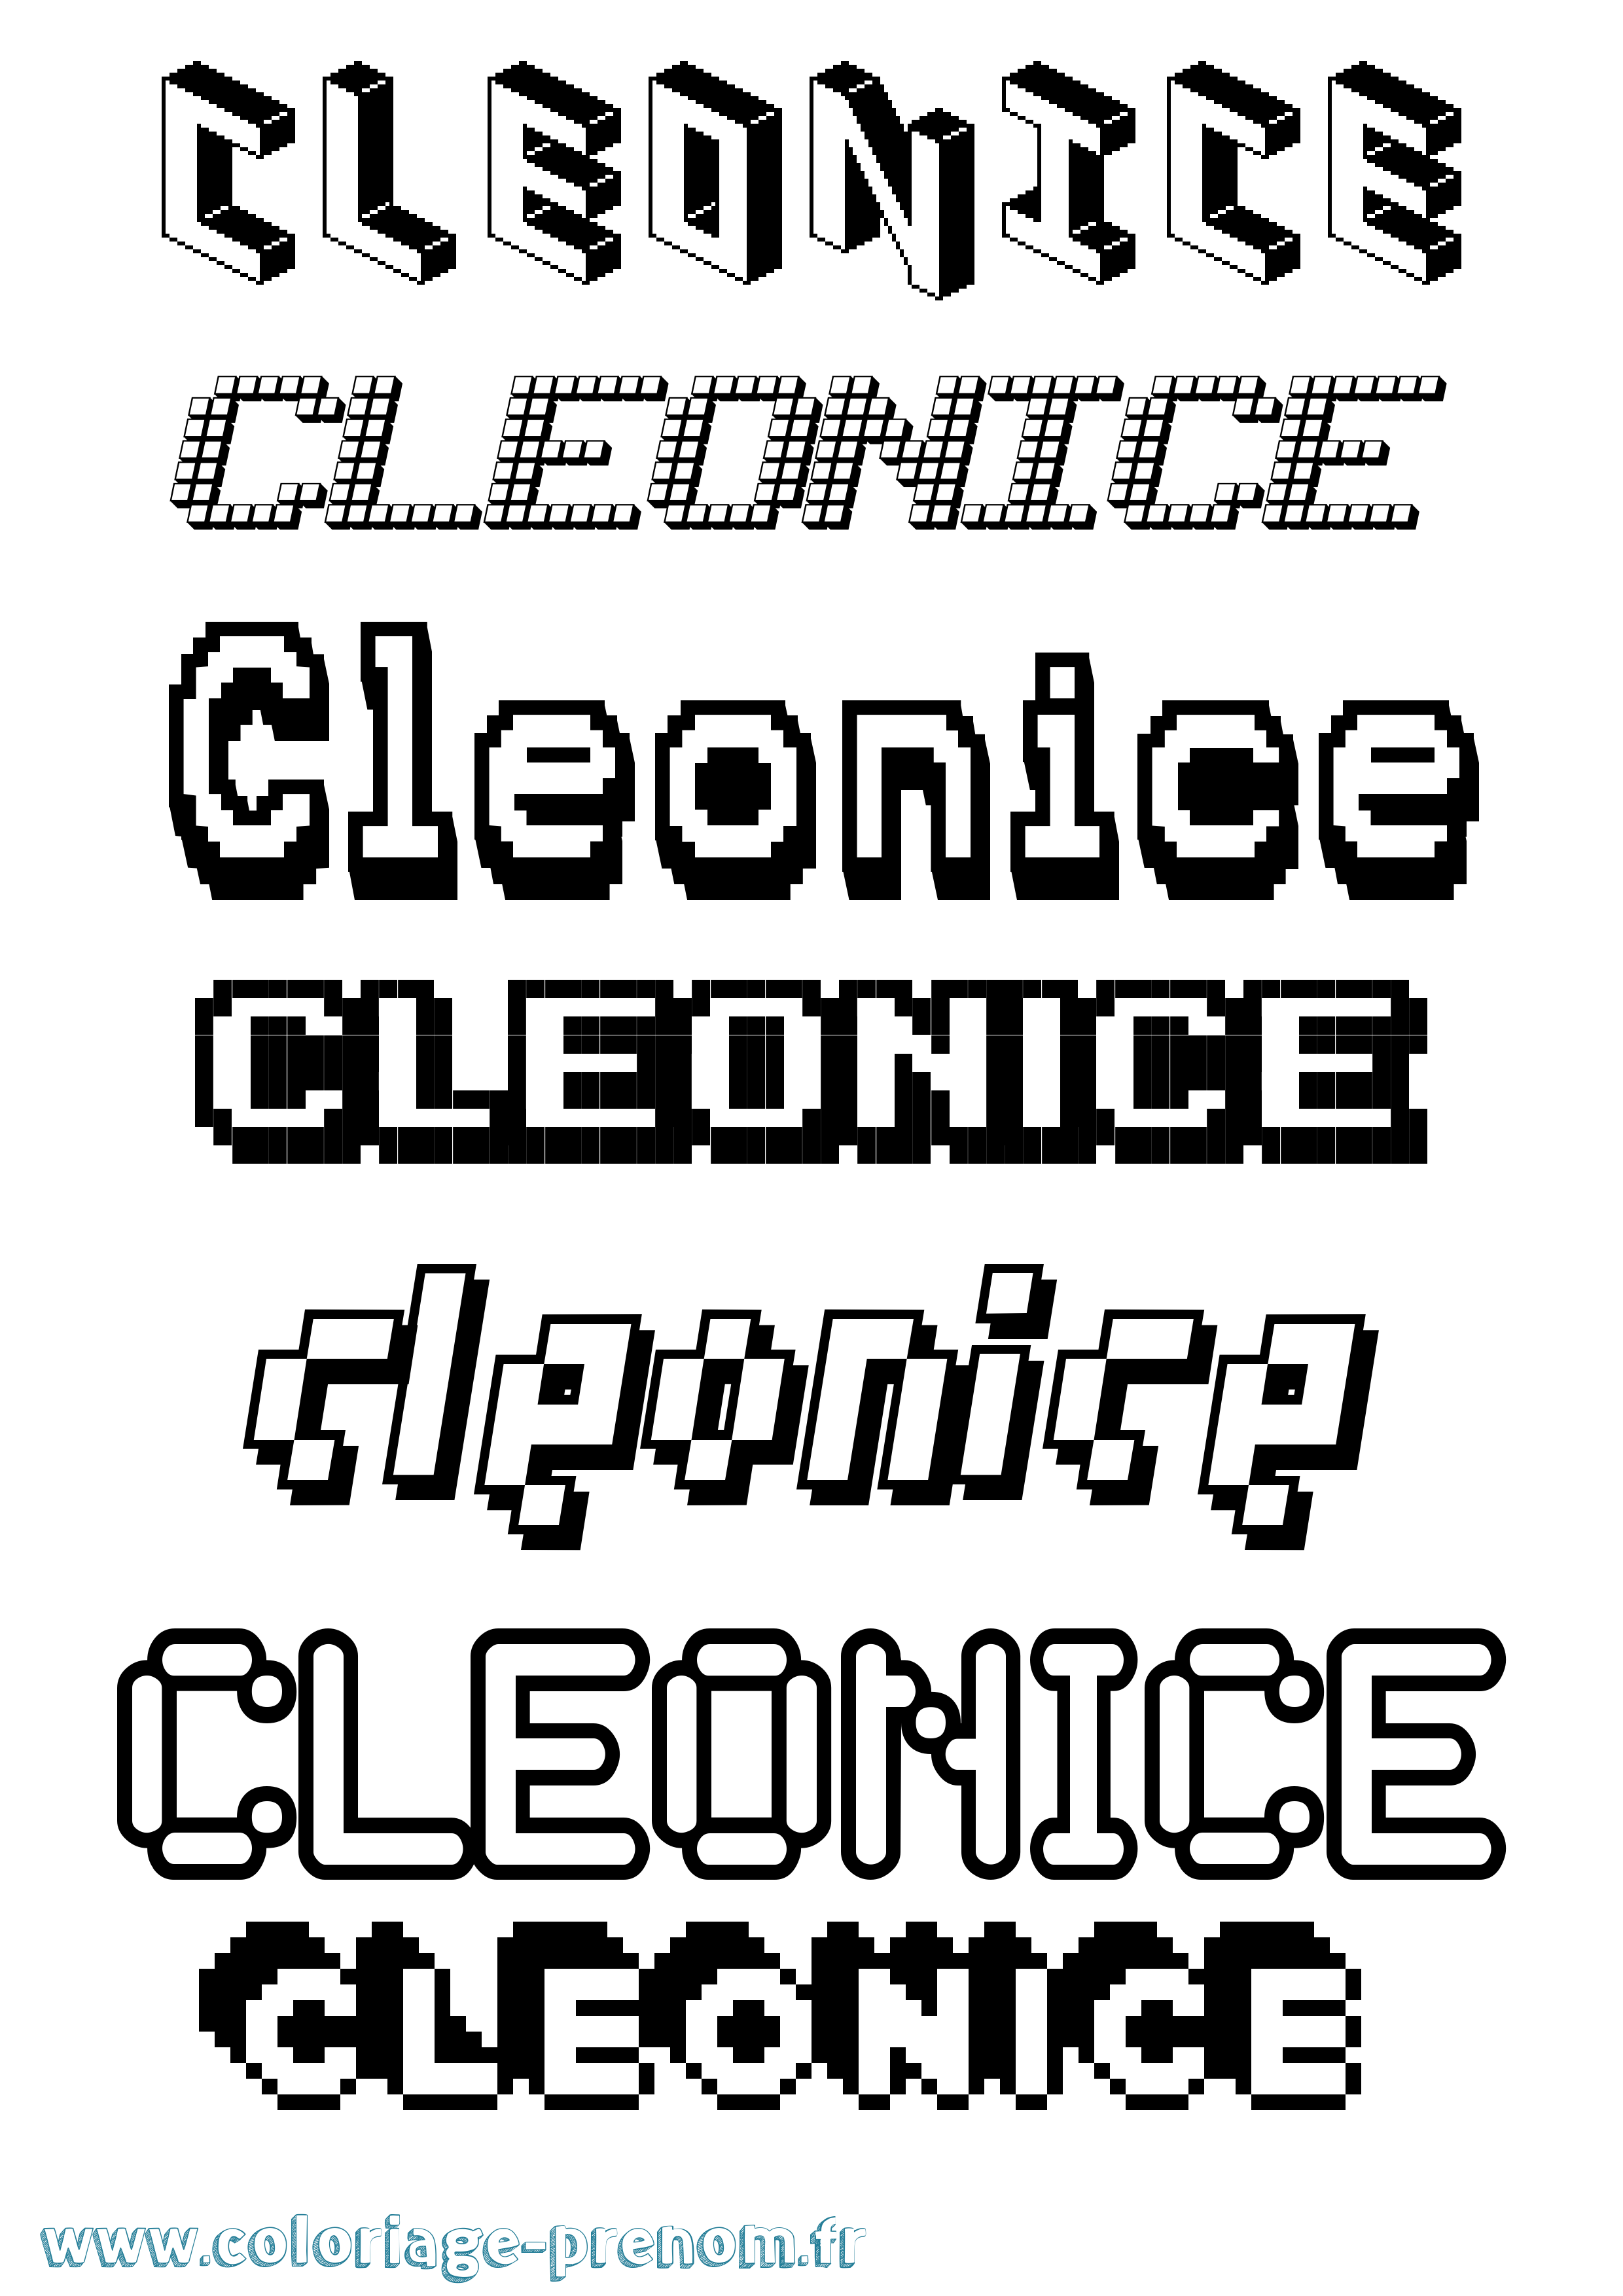 Coloriage prénom Cleonice Pixel